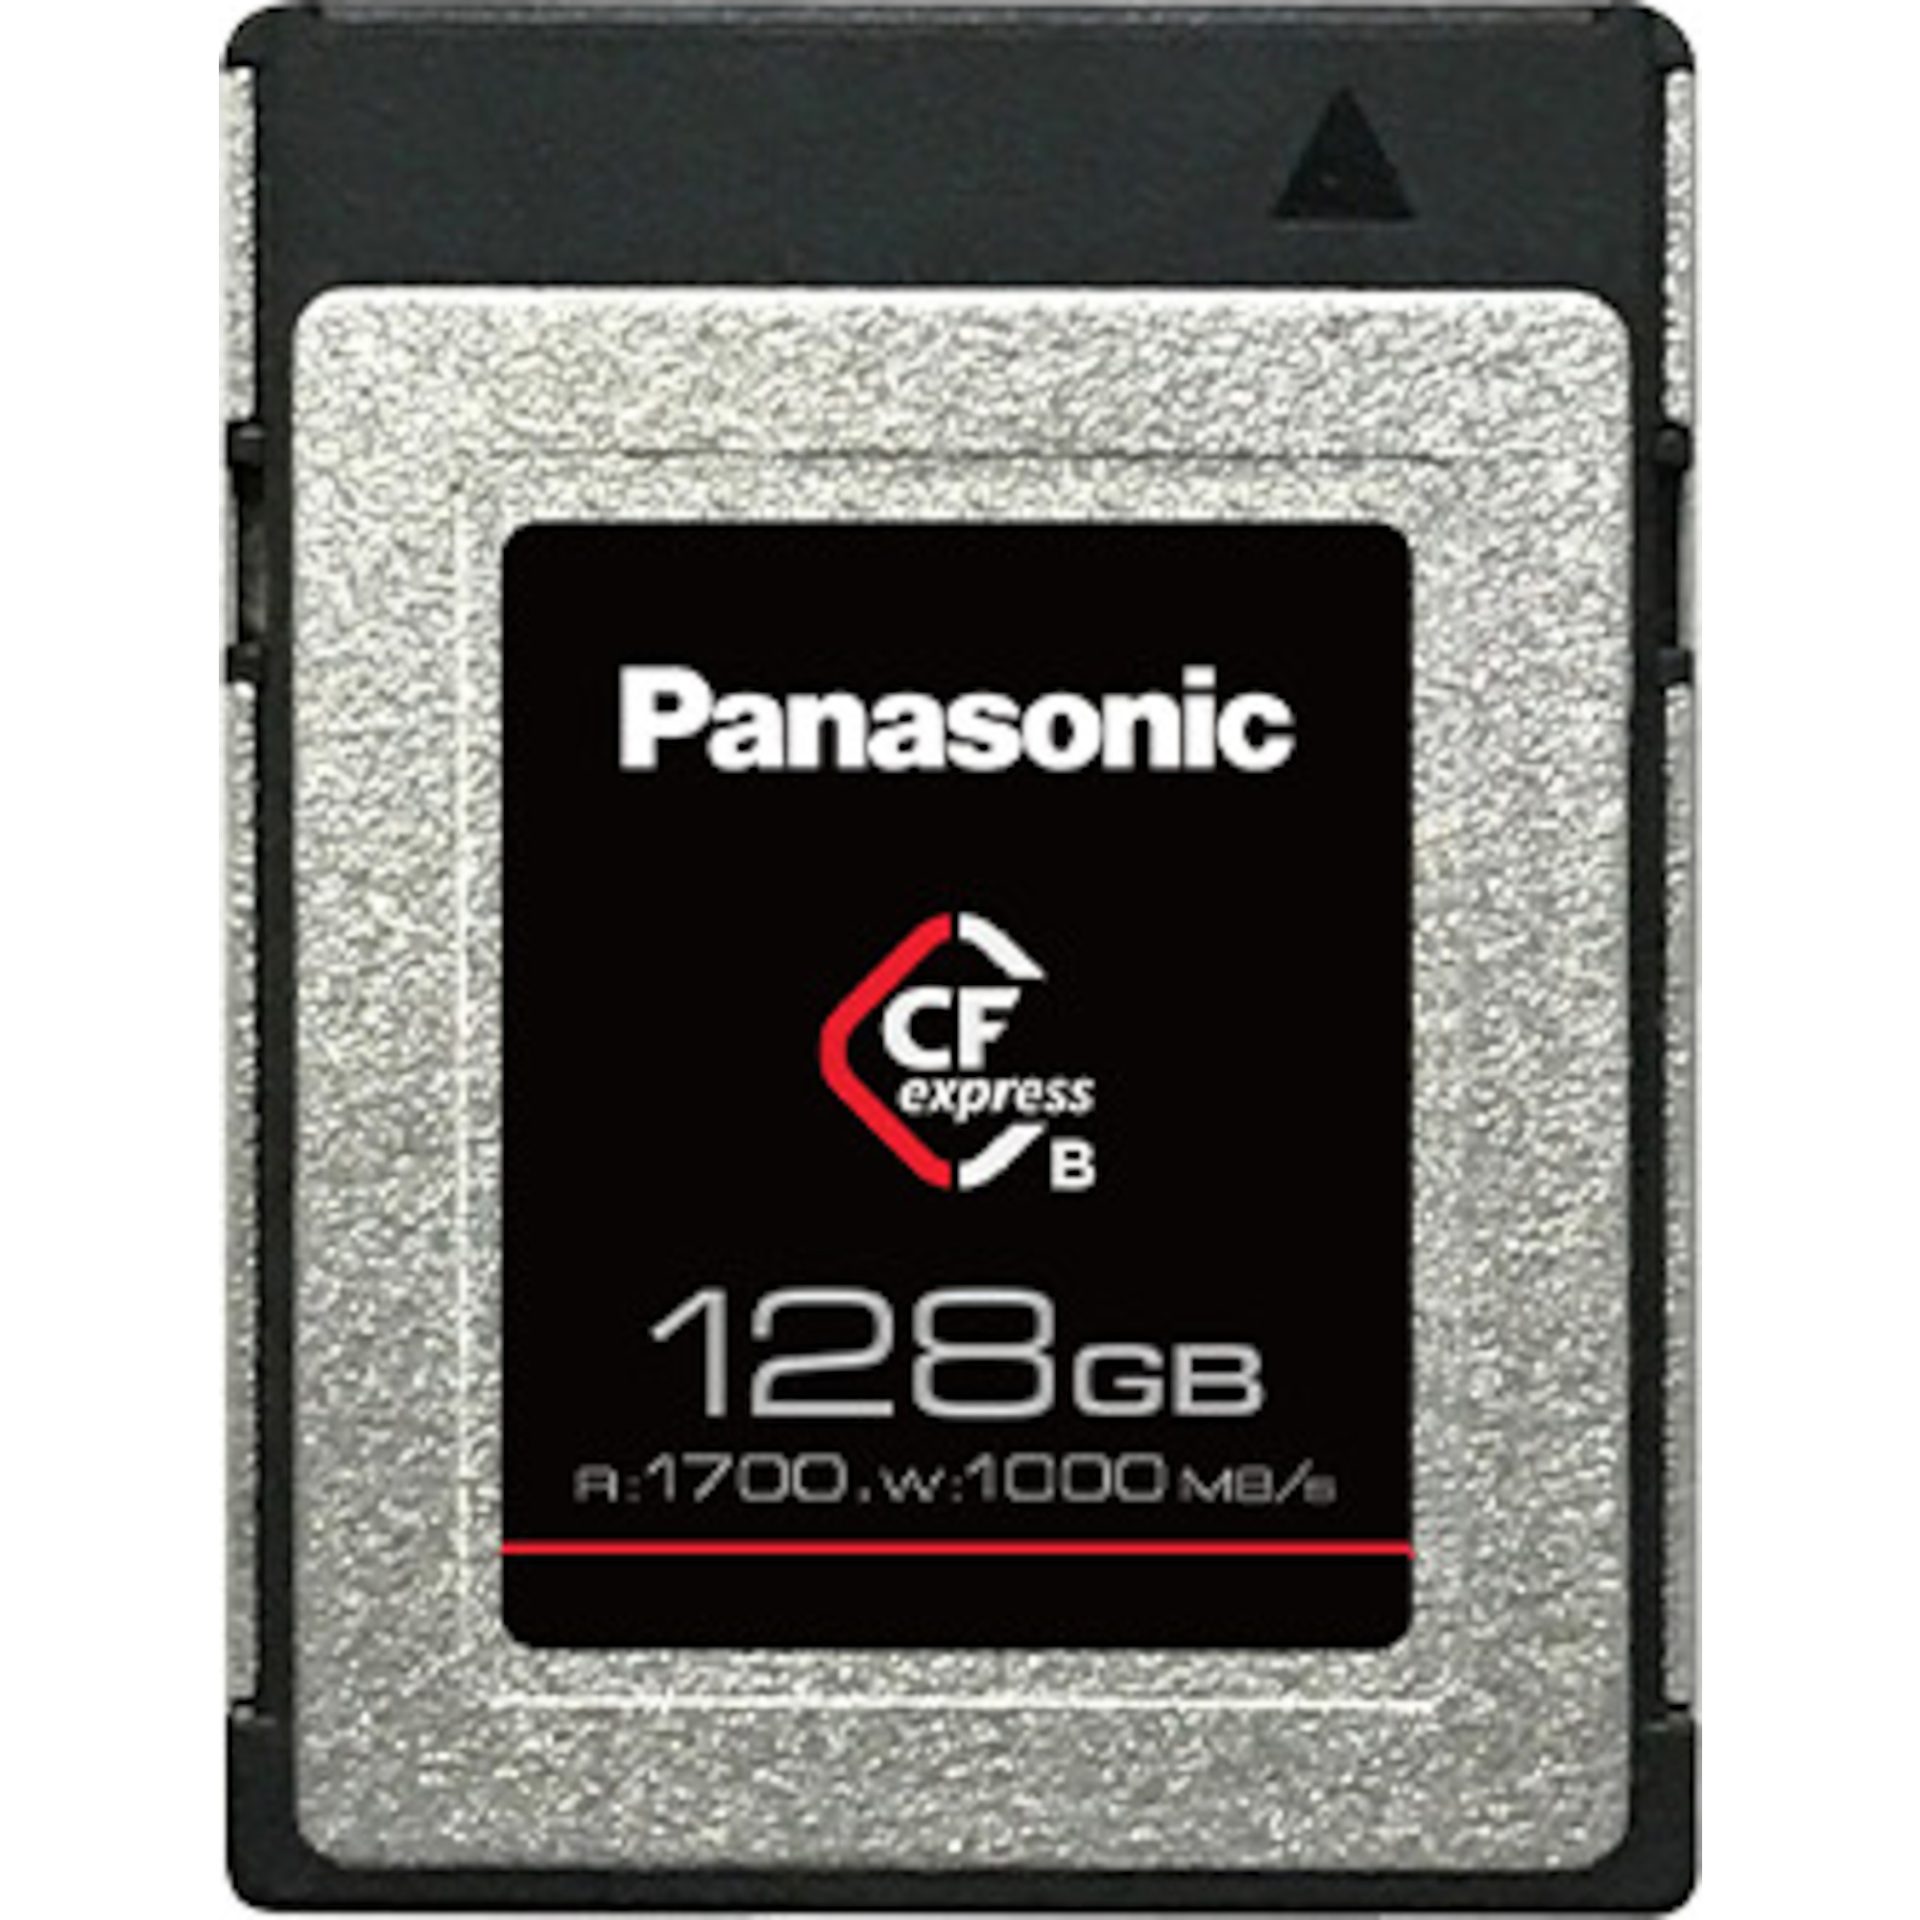 Panasonic RP-CFEX128 Cfexpress paměťová karta 128GB (PCI Express 3.0, 1700MB/s čtení, 1000MB/s zápis, provoz -10-70°, vibrace: 20 Gp-p, náraz: 1500 G)